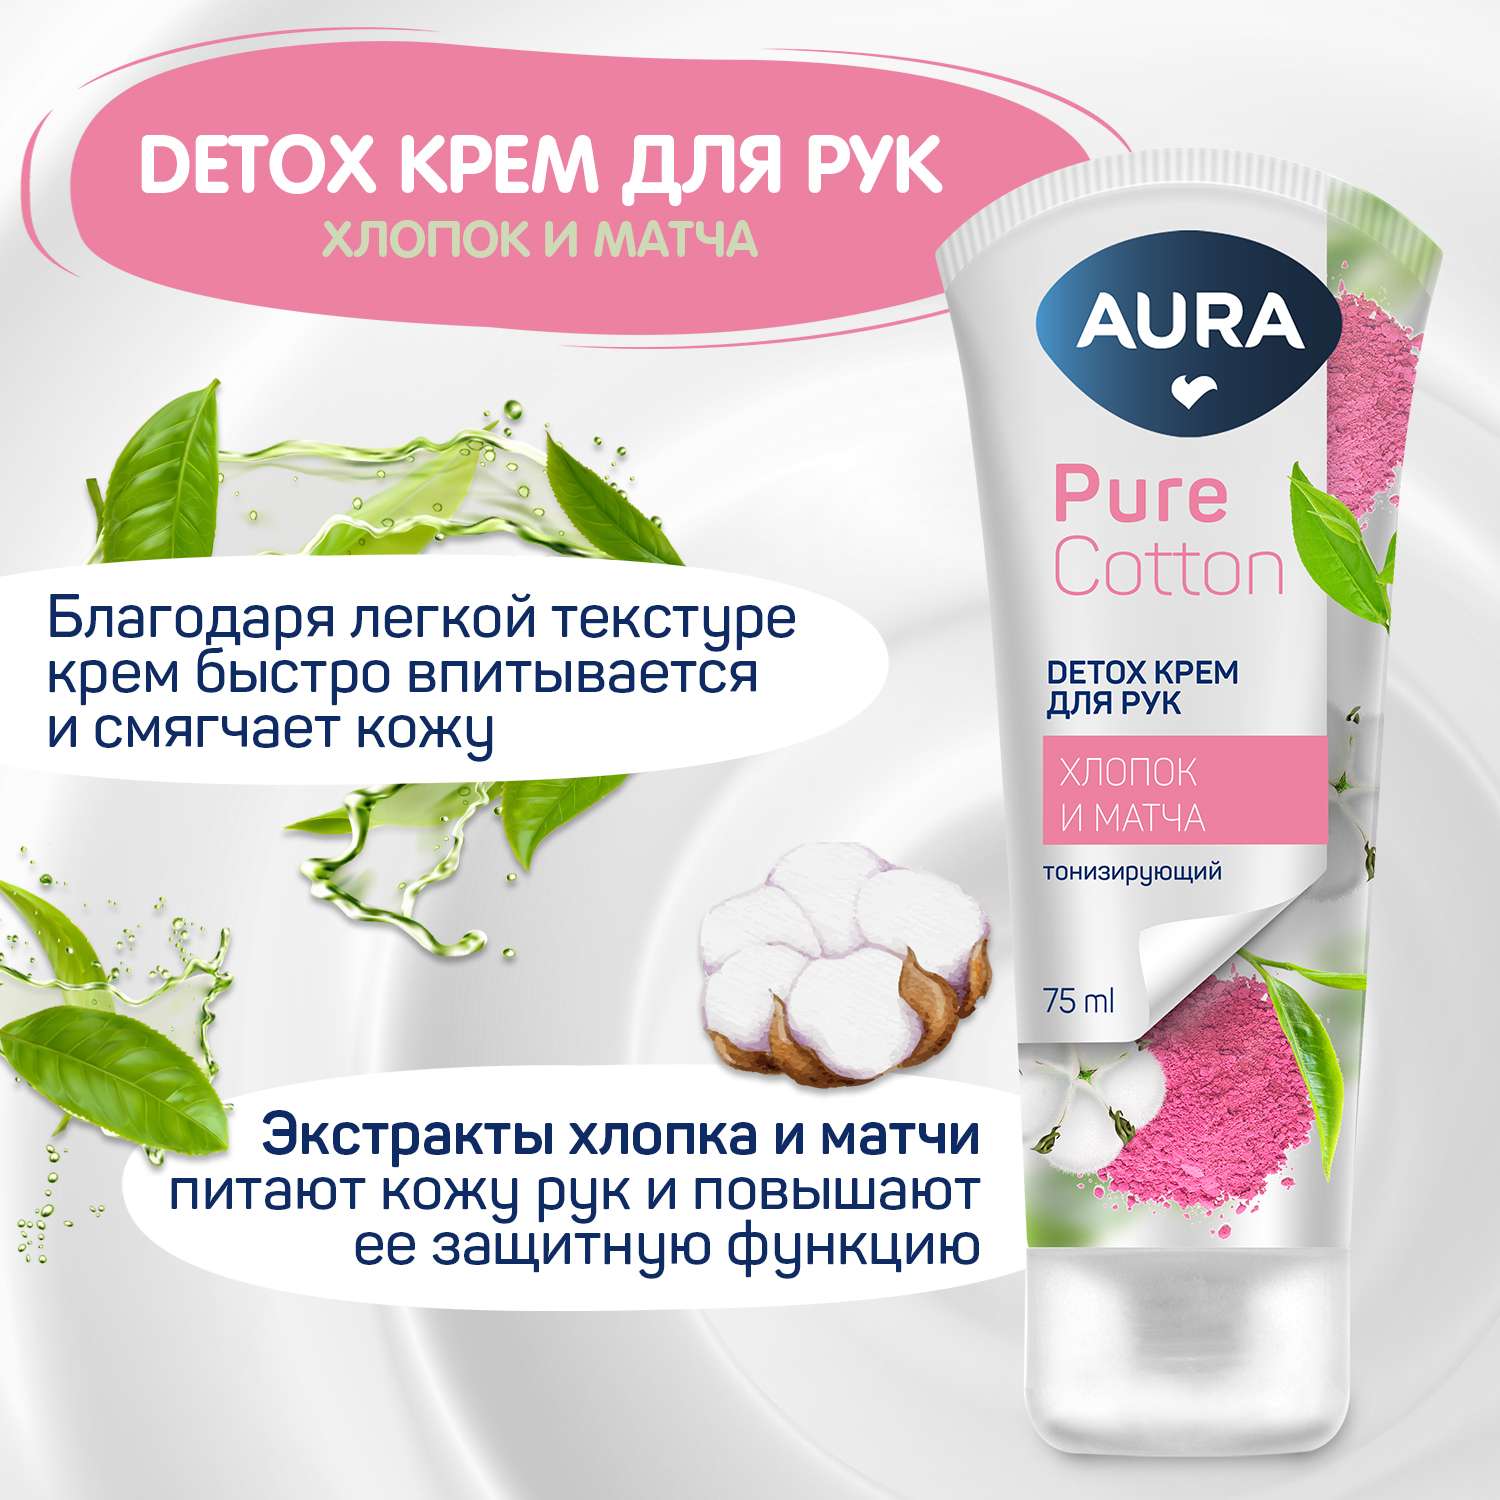 Подарочный набор AURA Skin Care - фото 2